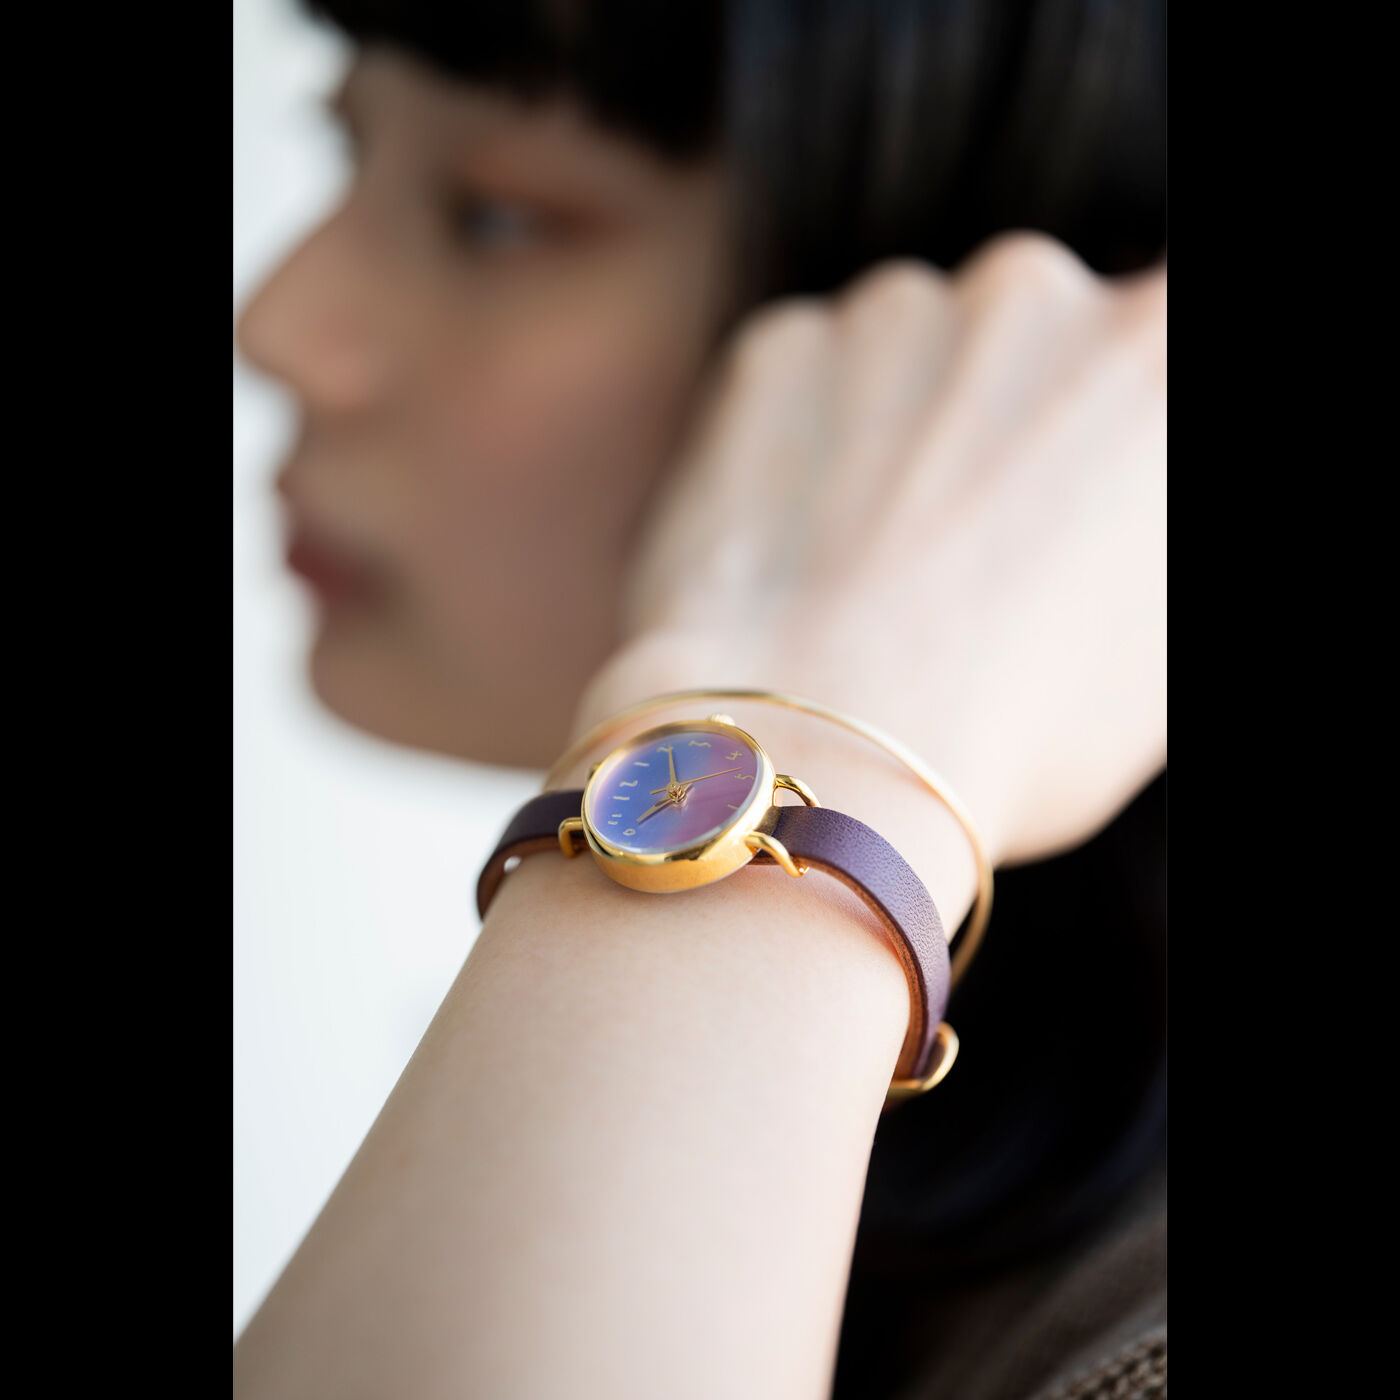 ＆Stories|金沢の時計職人が手掛けた　朝焼けに見惚れる腕時計〈マルベリーパープル〉|新しいことを始めたくなるシーズンにこそ、1日がはじまる美しい色を身につけて。